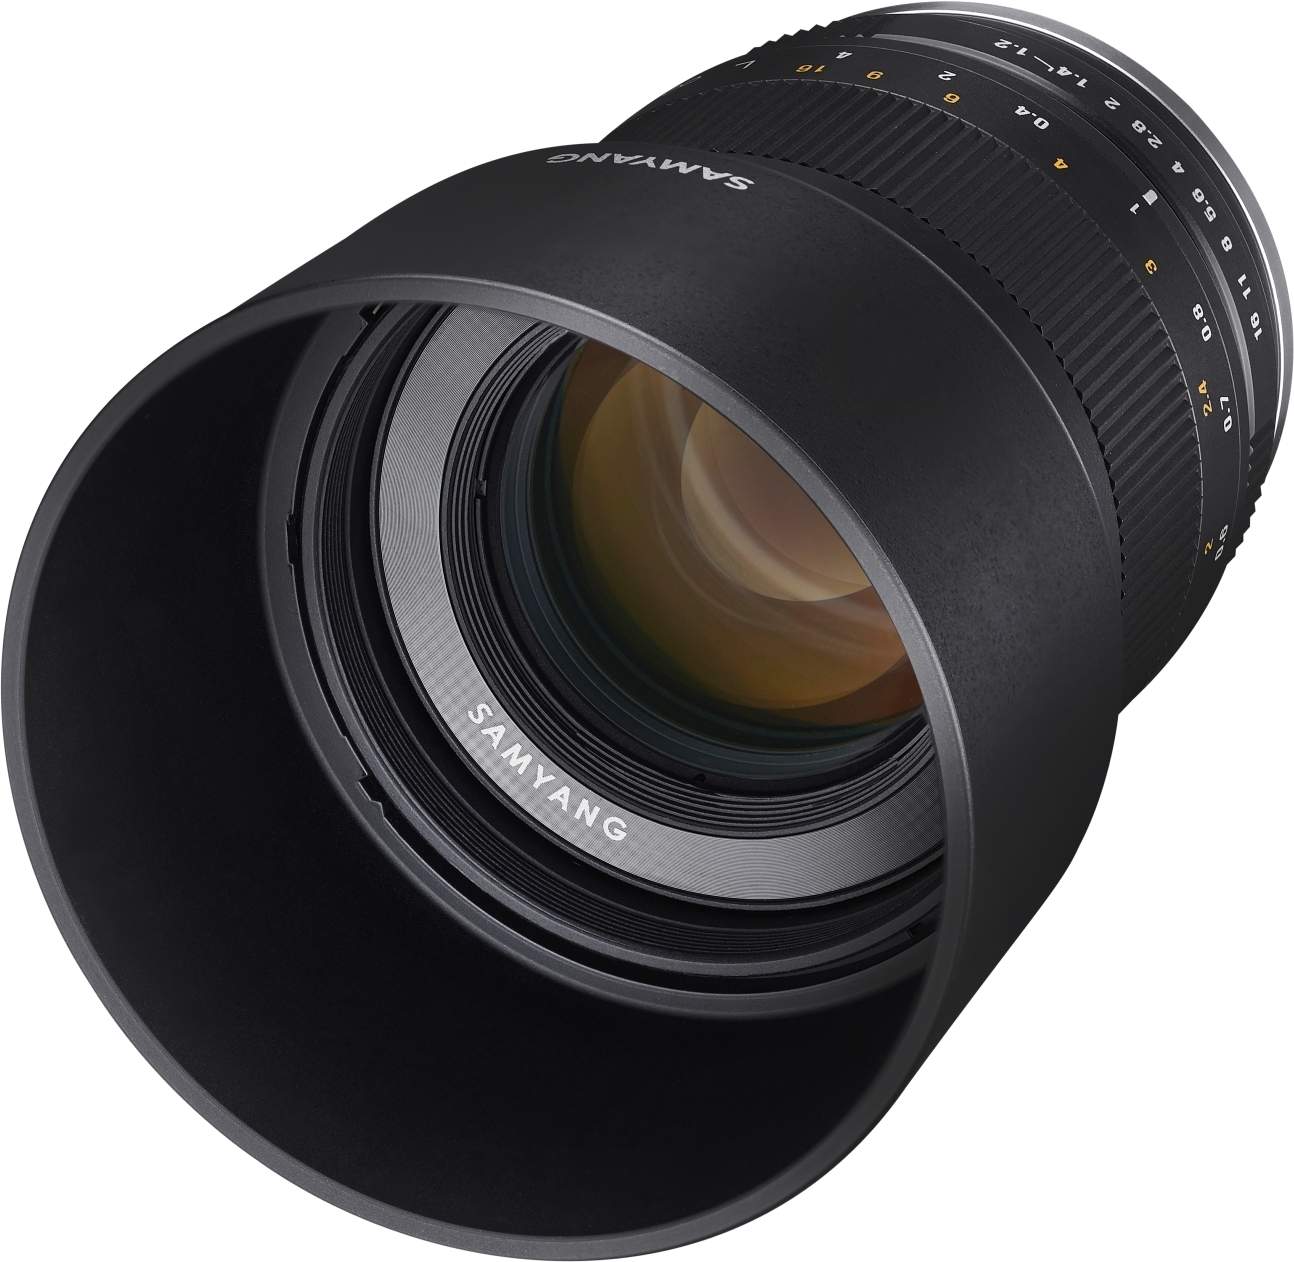 Samyang 50mm F1.2 UMC II MFT Full Frame Camera Lens